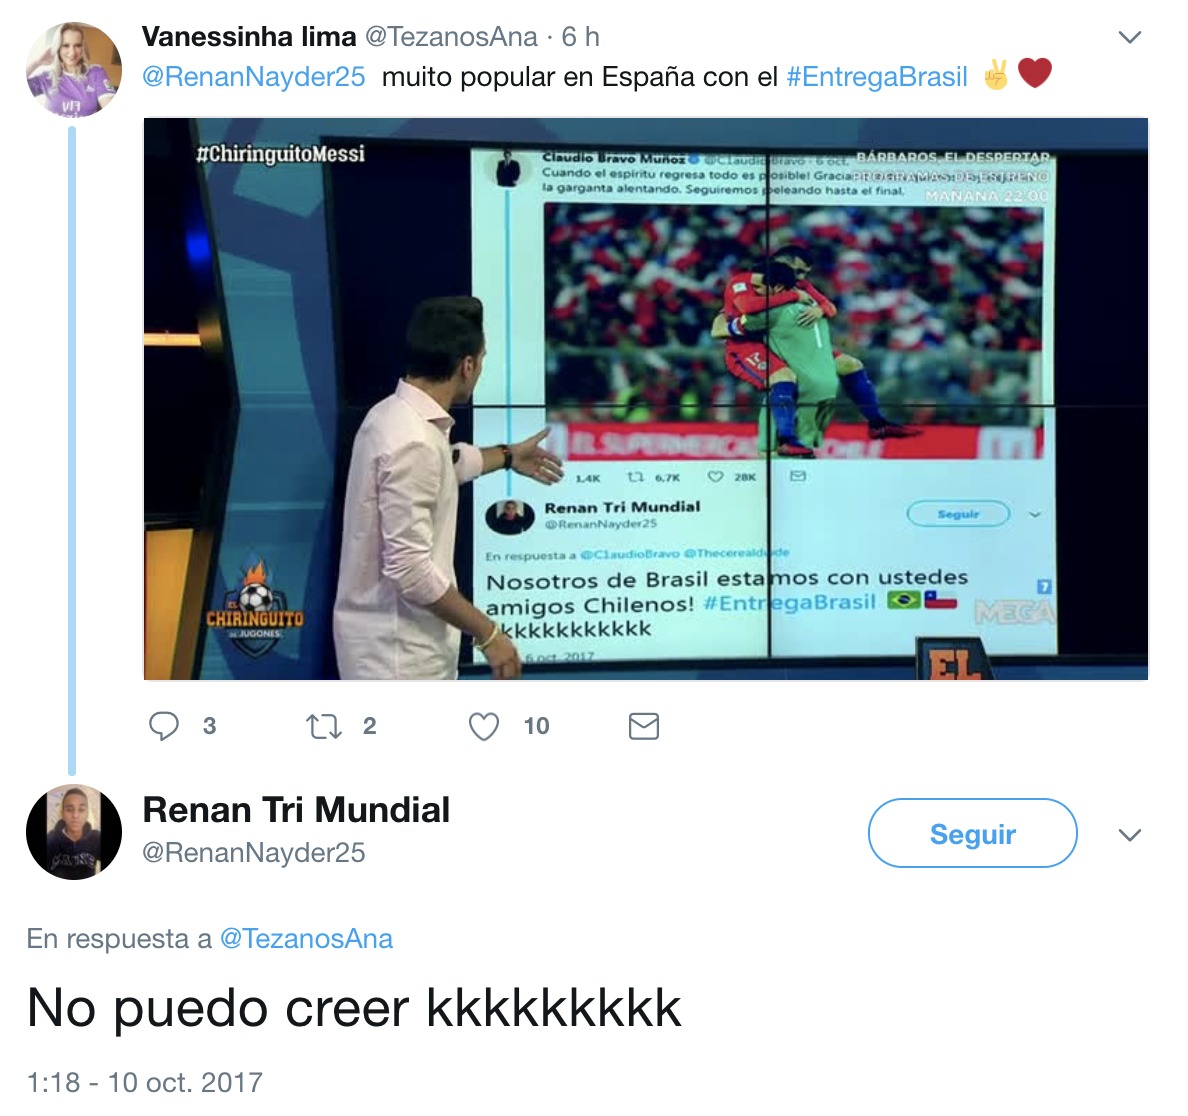 El Chiringuito trollea a un tuitero brasileño en directo y pasa de 50 a más de 2.000 seguidores